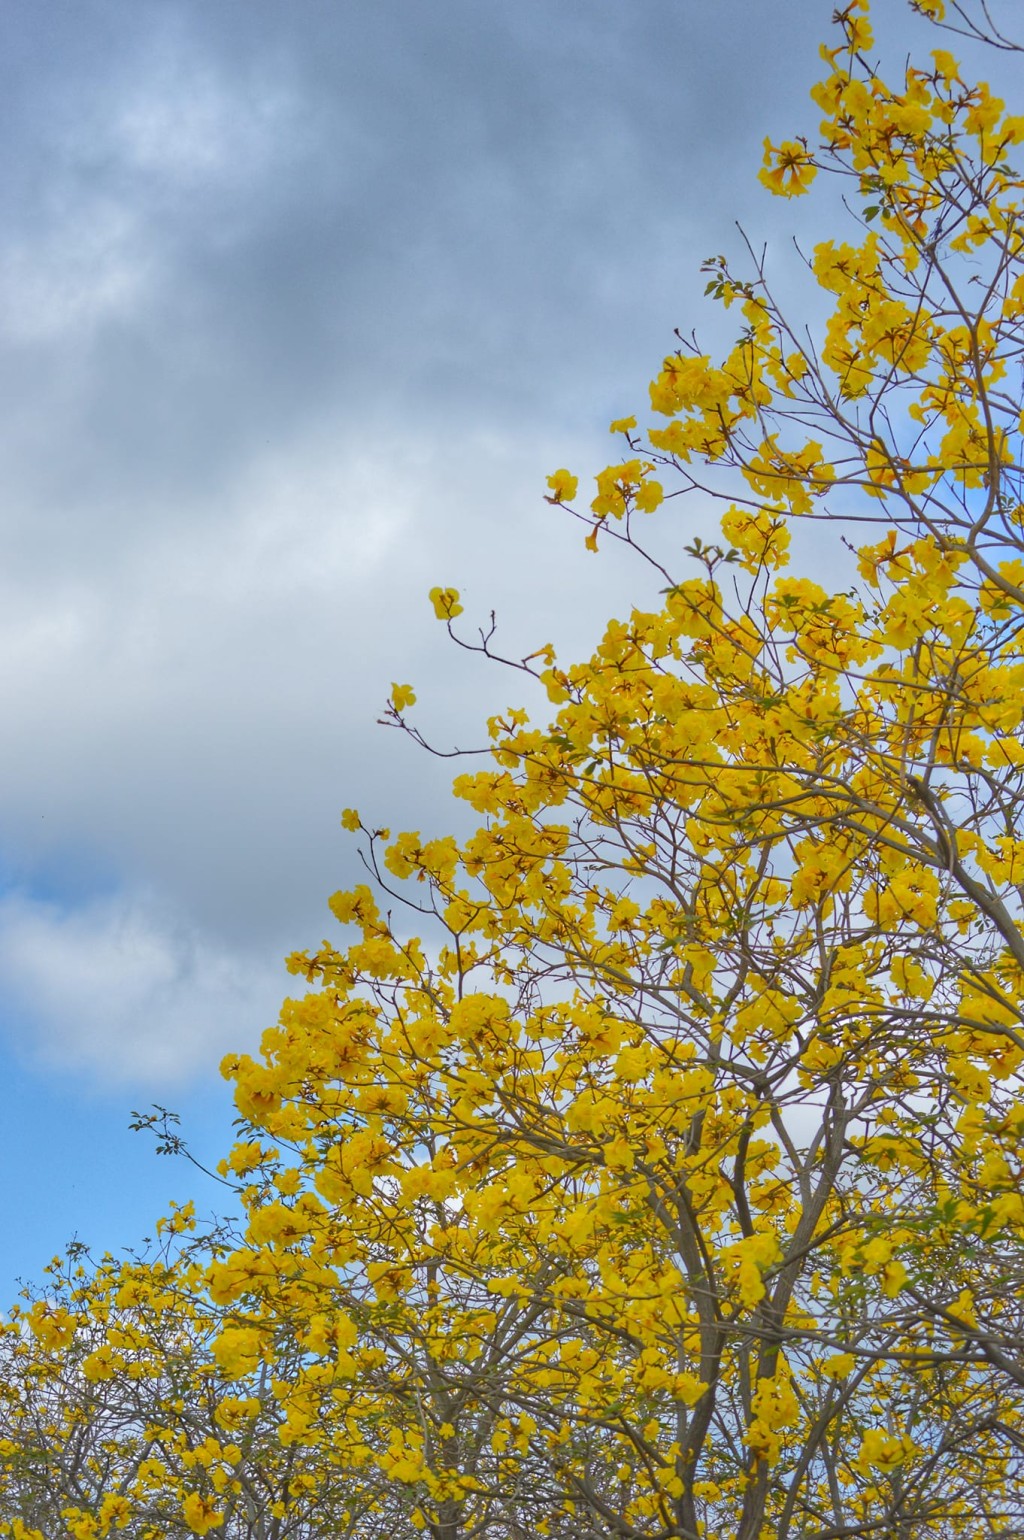 黄花风铃木的花朵花缘呈现皱摺状，似足风铃形状，因而得名。花期通常为每年的2至3月，花期短暂，想去赏花的大家要把握时间！（图片来源：FB @ Helen Li 提供）